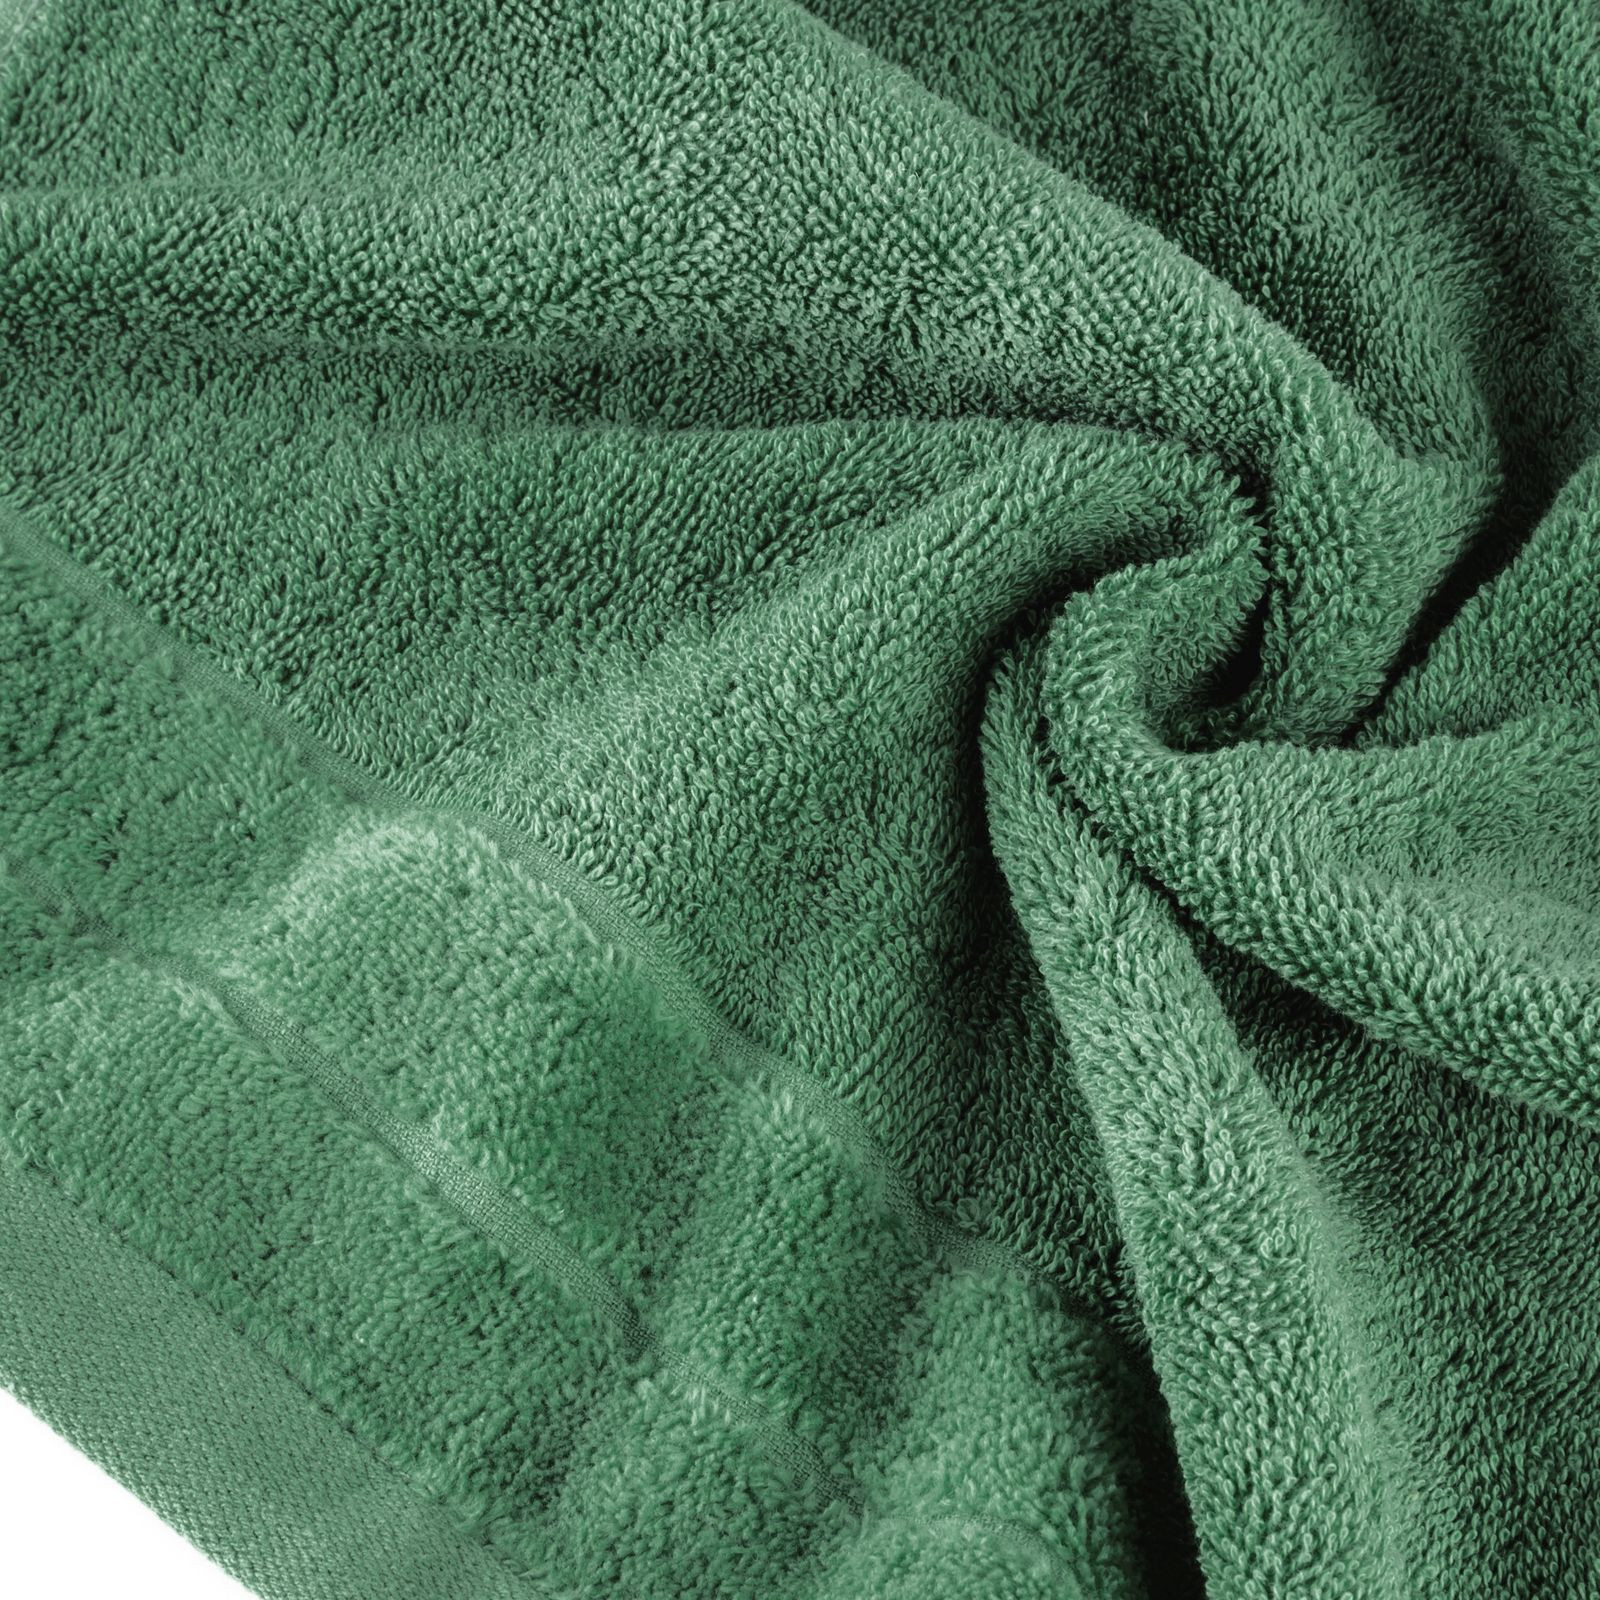 Sada ručníků DAMLA 11 zelená